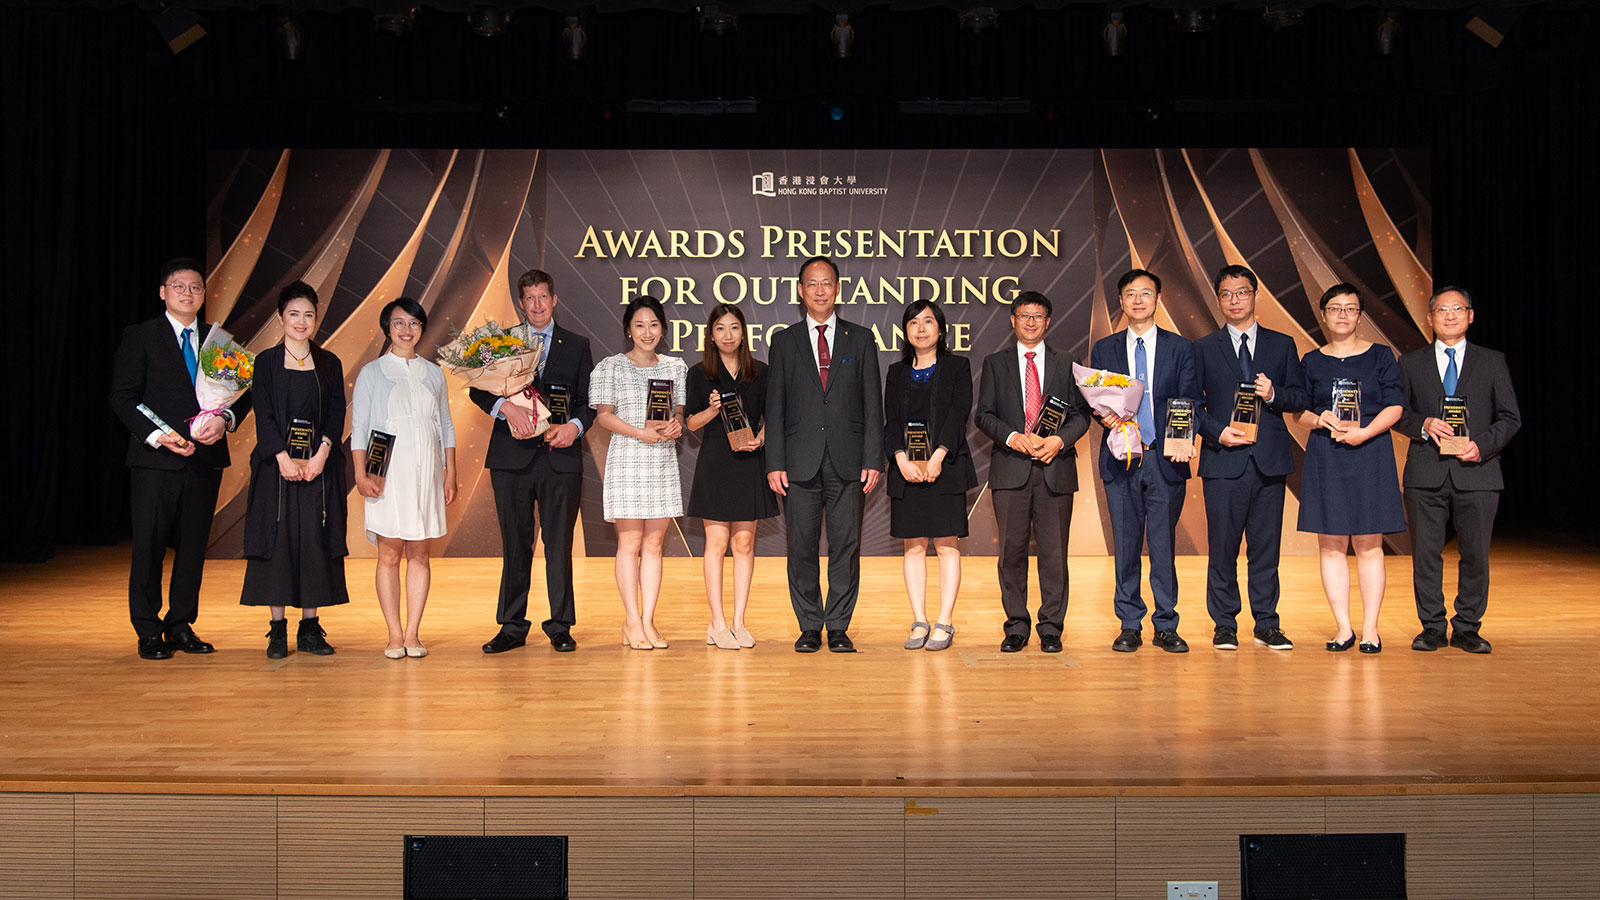 President’s Award for Outstanding Performance